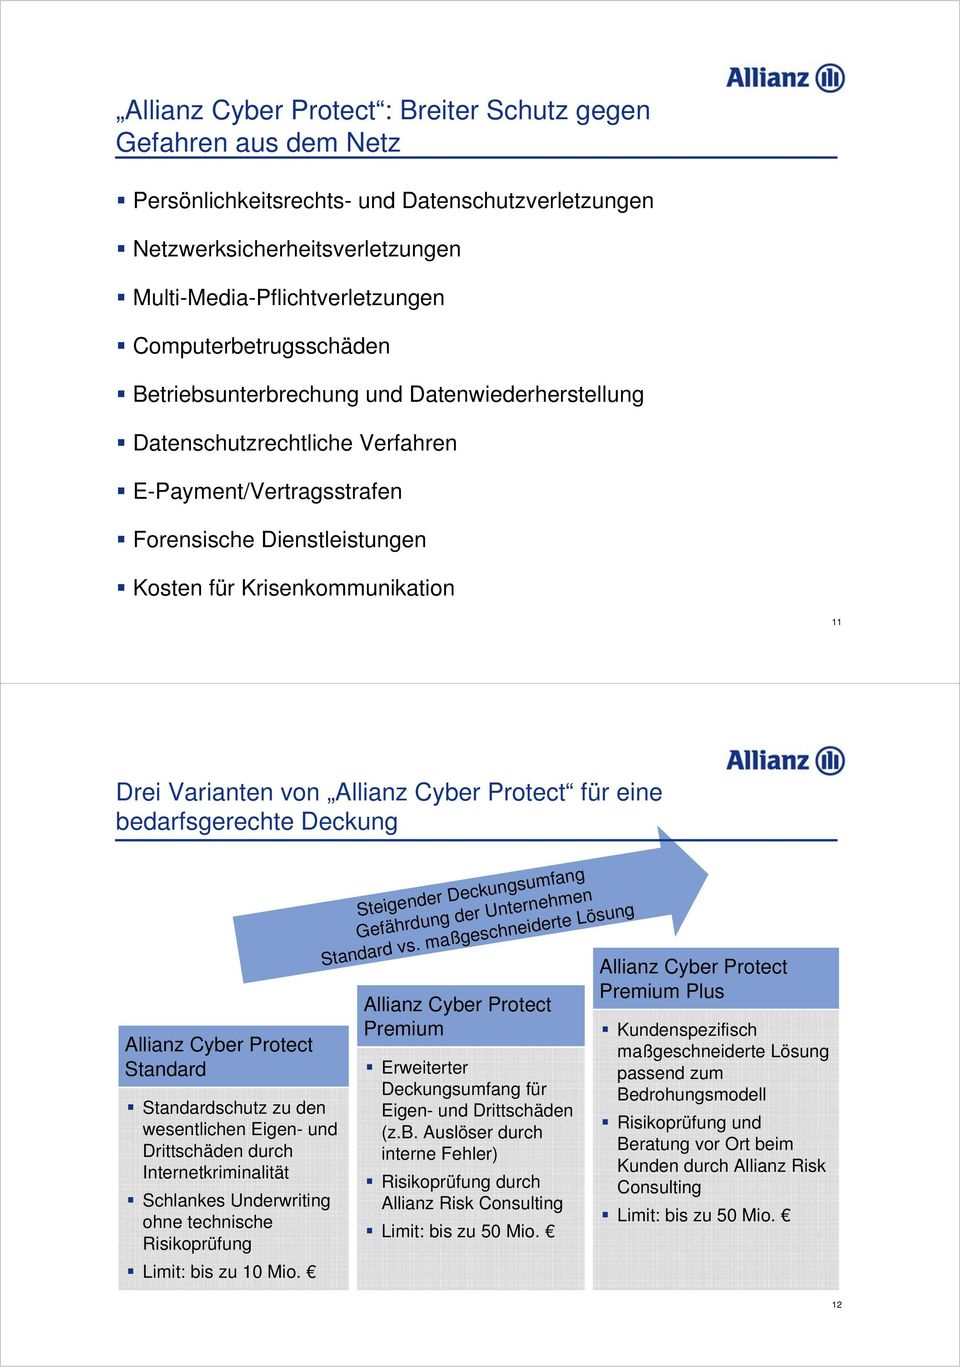 Varianten von Allianz Cyber Protect für eine bedarfsgerechte Deckung Allianz Cyber Protect Standard Standardschutz zu den wesentlichen Eigen- und Drittschäden durch Internetkriminalität Schlankes